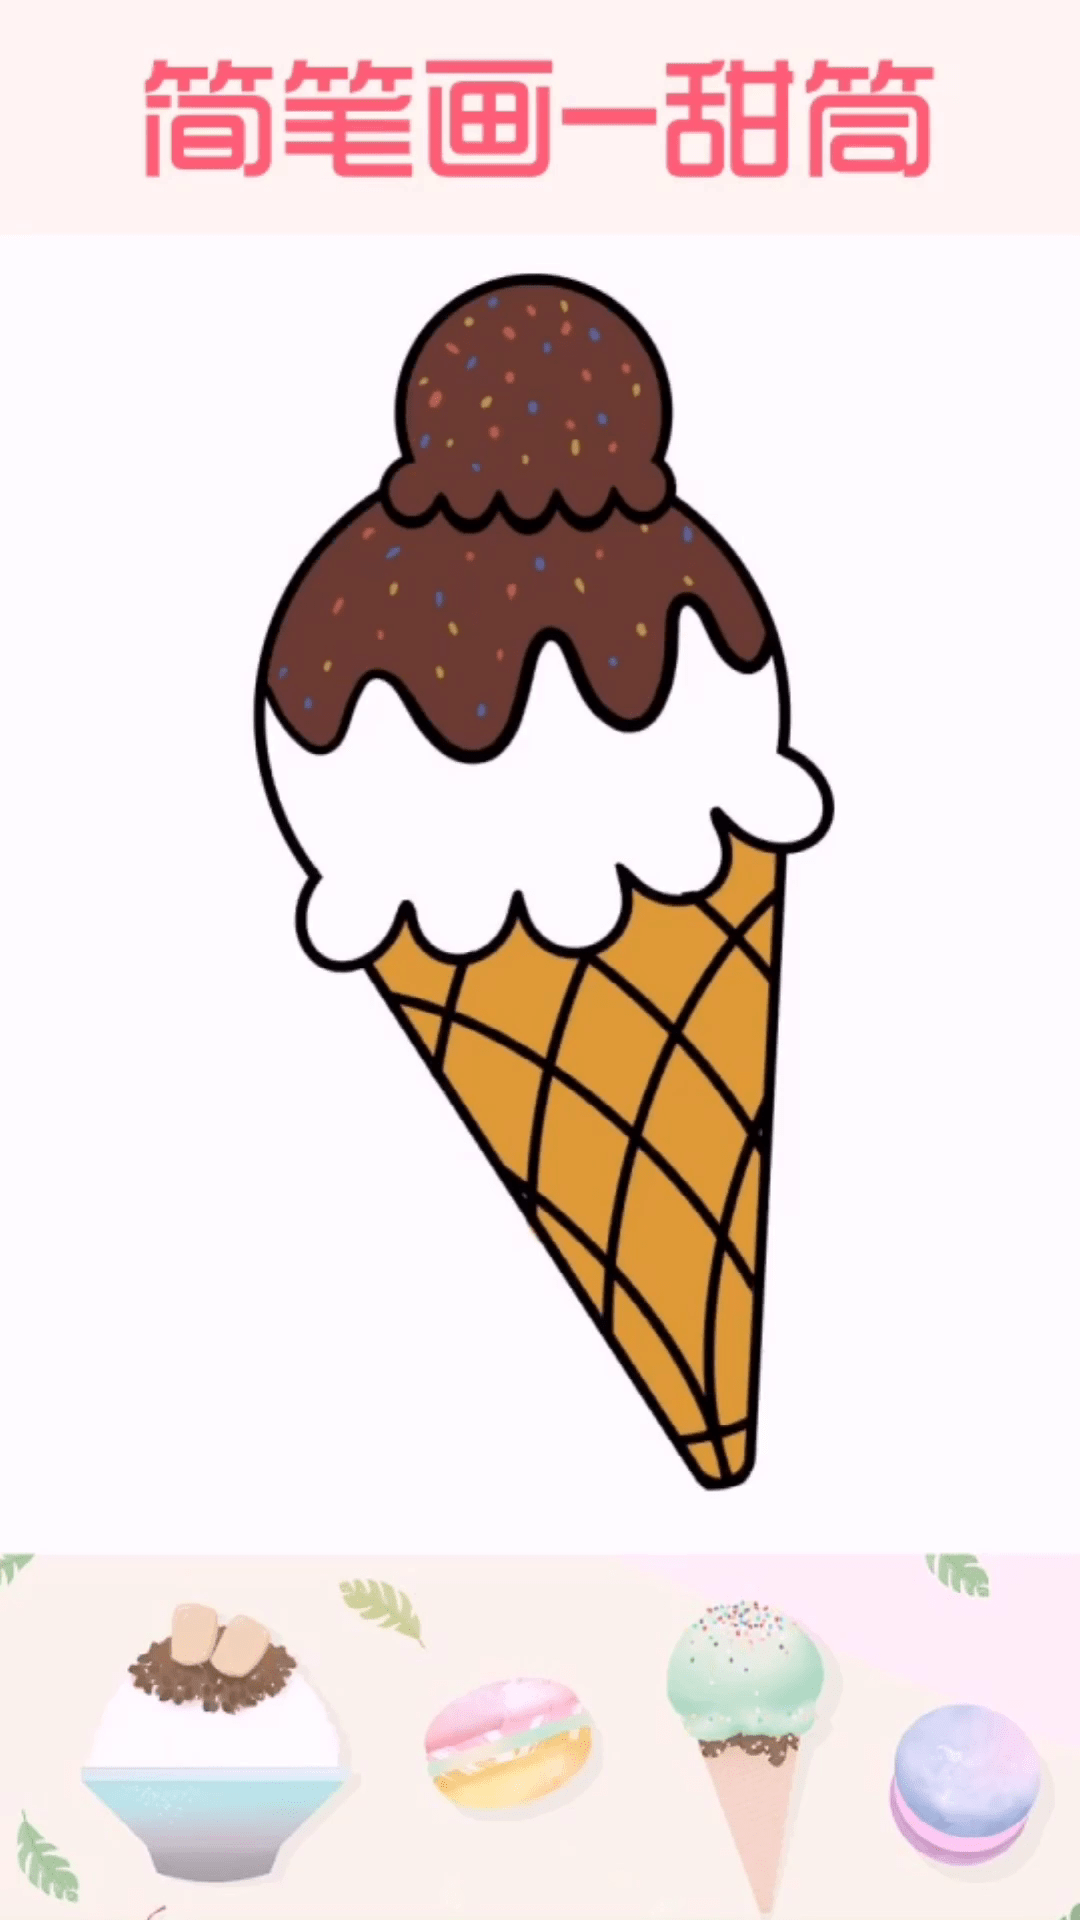 甜筒冰淇淋简笔画彩色图片